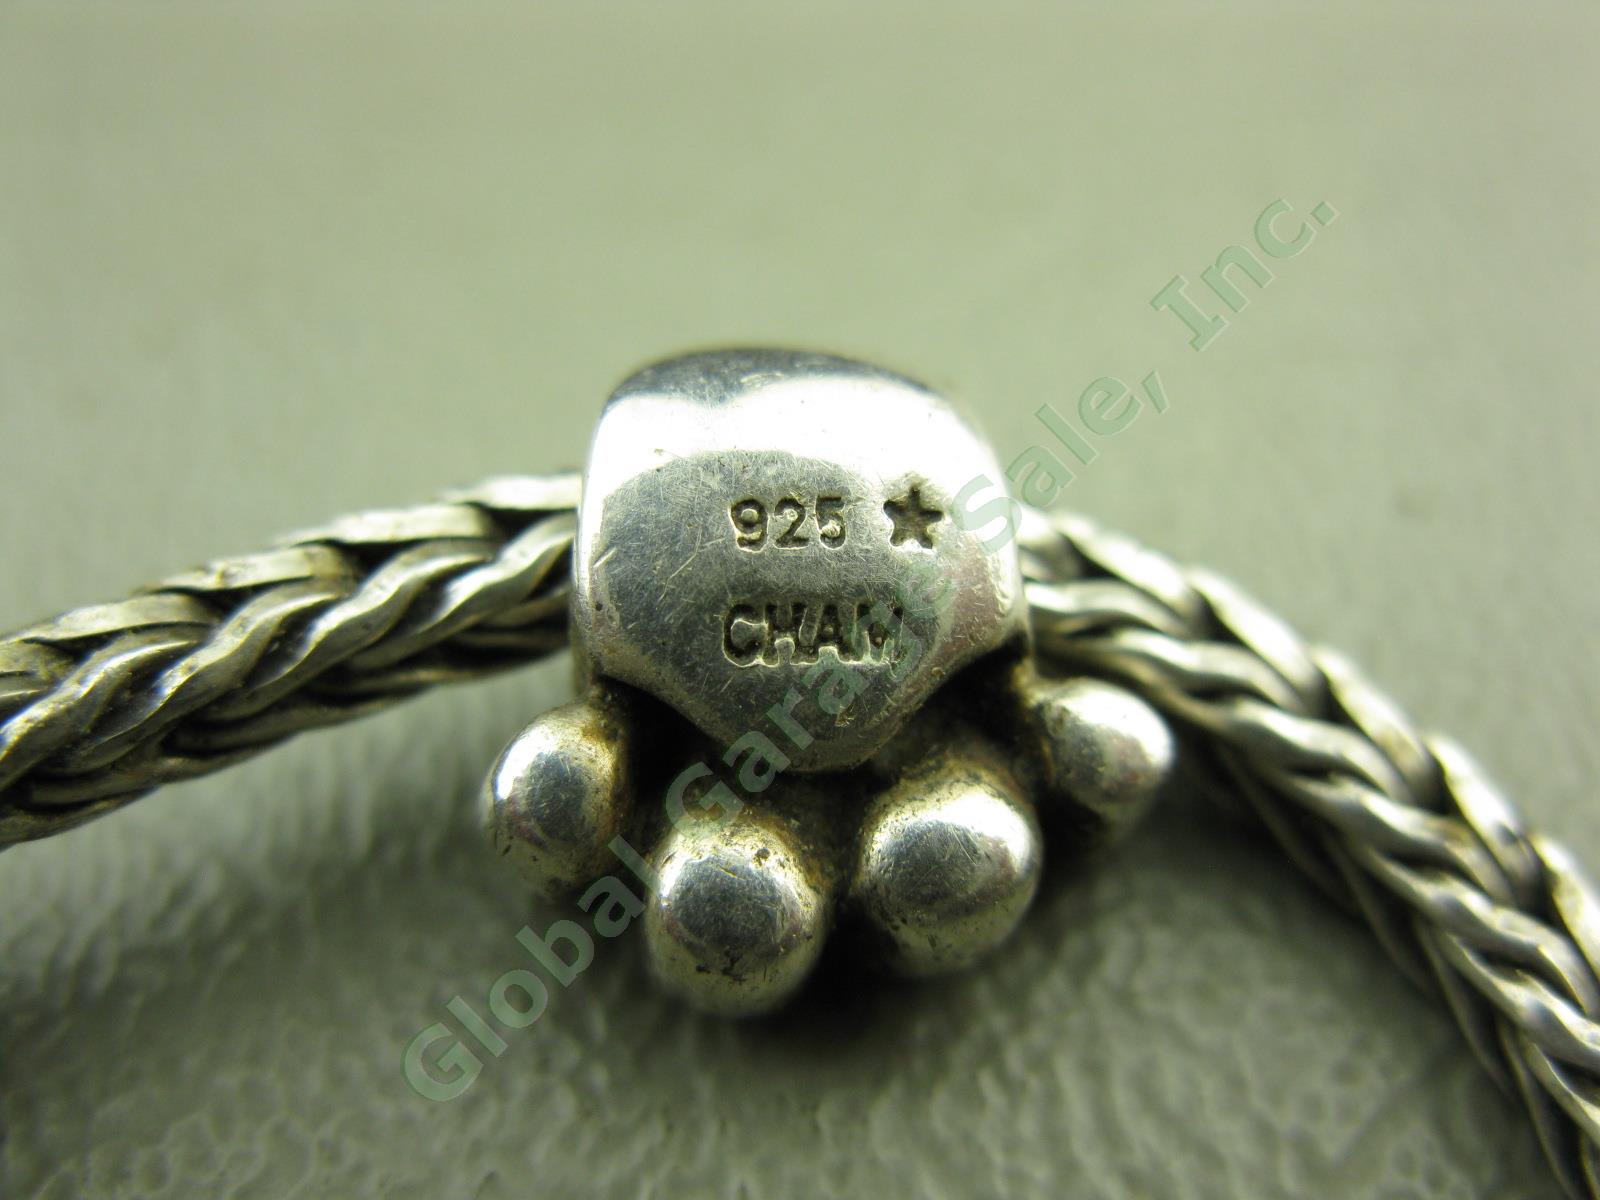 Trollbeads LAA 925 S Sterling Silver Bracelet Swan Lock Chamilia Charm Beads Lot 4